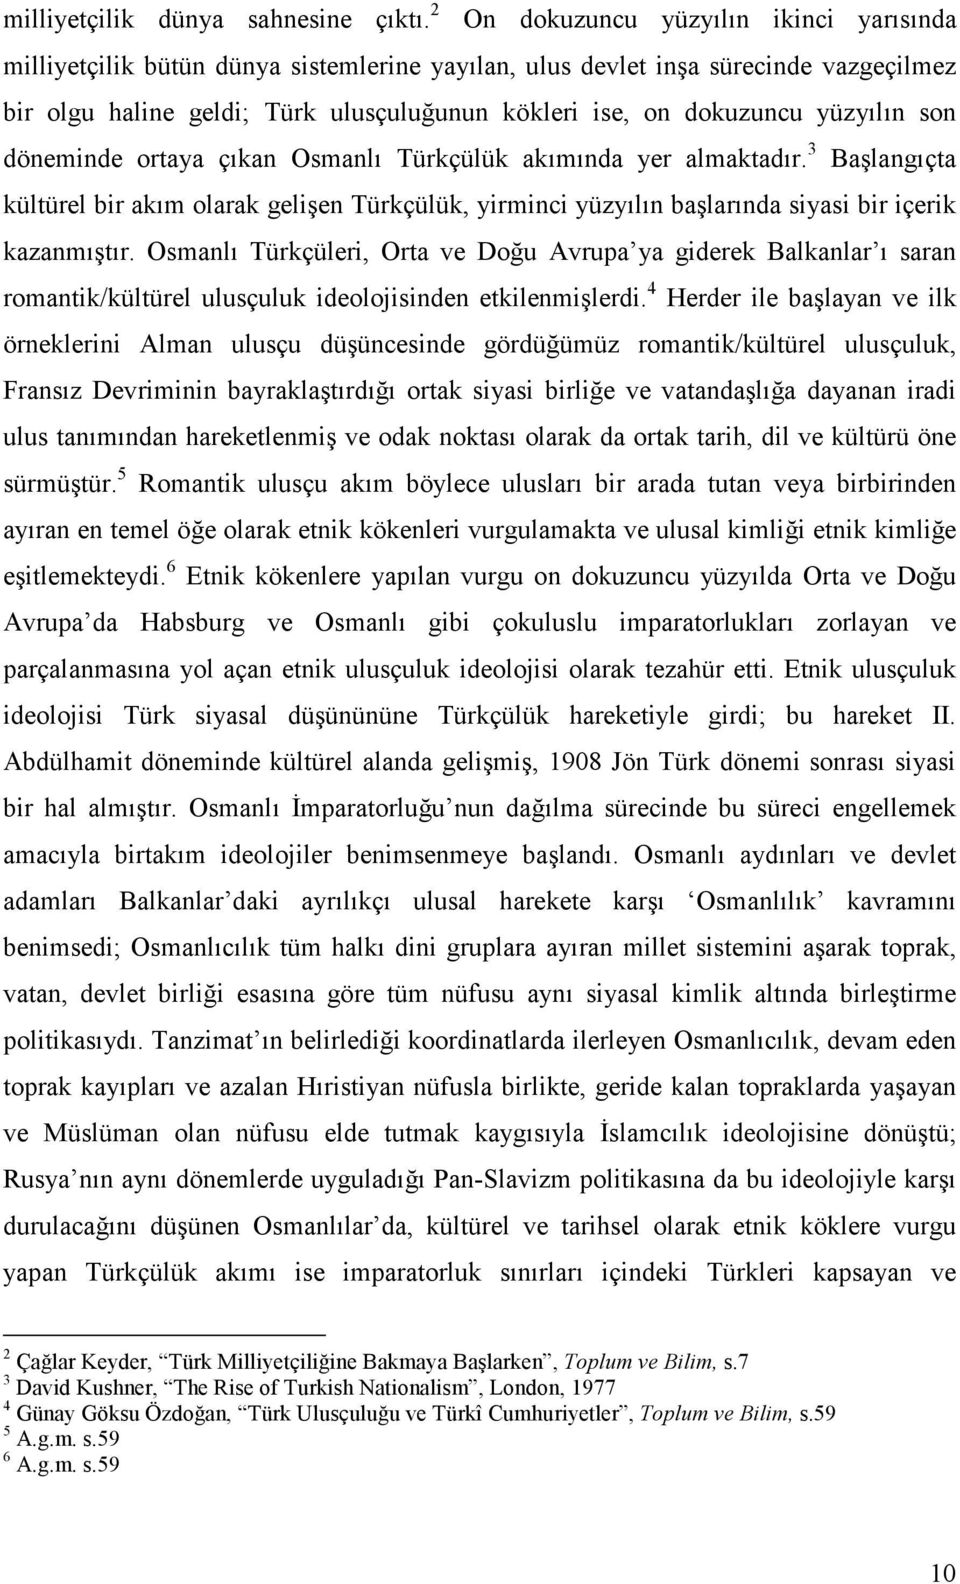 yüzyılın son döneminde ortaya çıkan Osmanlı Türkçülük akımında yer almaktadır. 3 Başlangıçta kültürel bir akım olarak gelişen Türkçülük, yirminci yüzyılın başlarında siyasi bir içerik kazanmıştır.